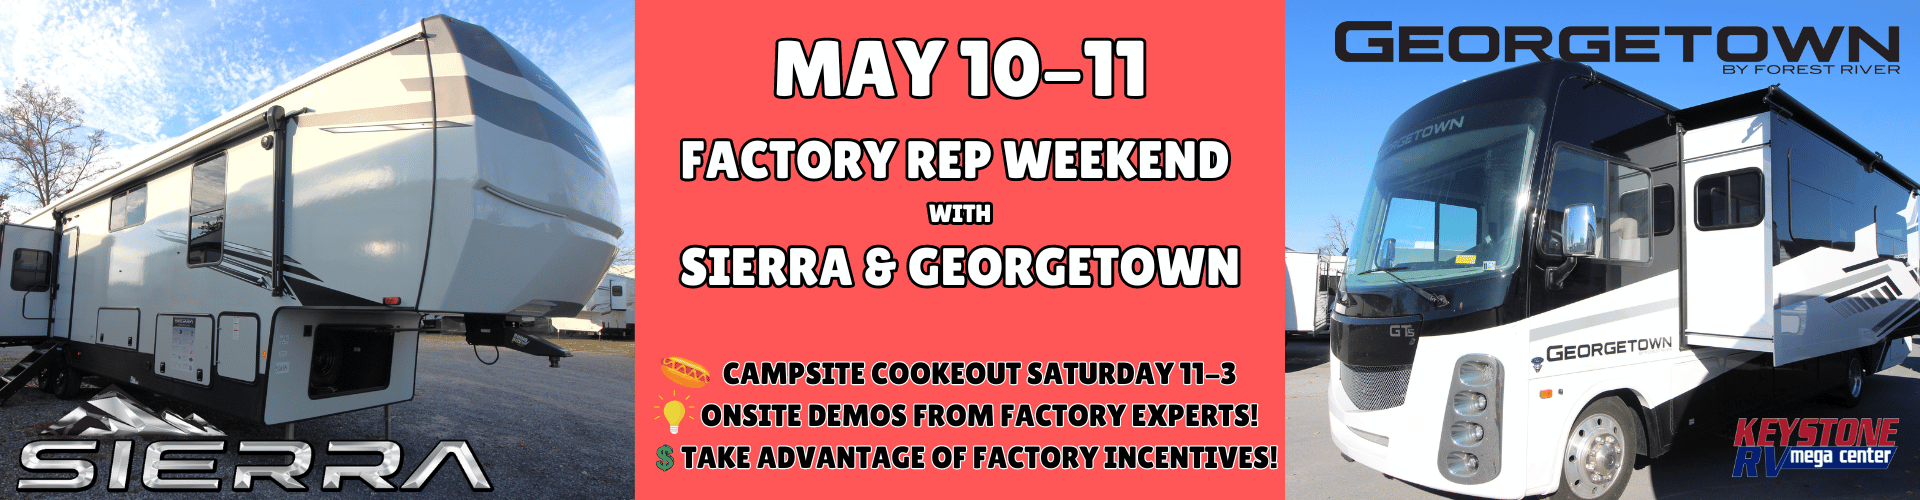 Factory Rep Weekend - Sierra/Georgetown